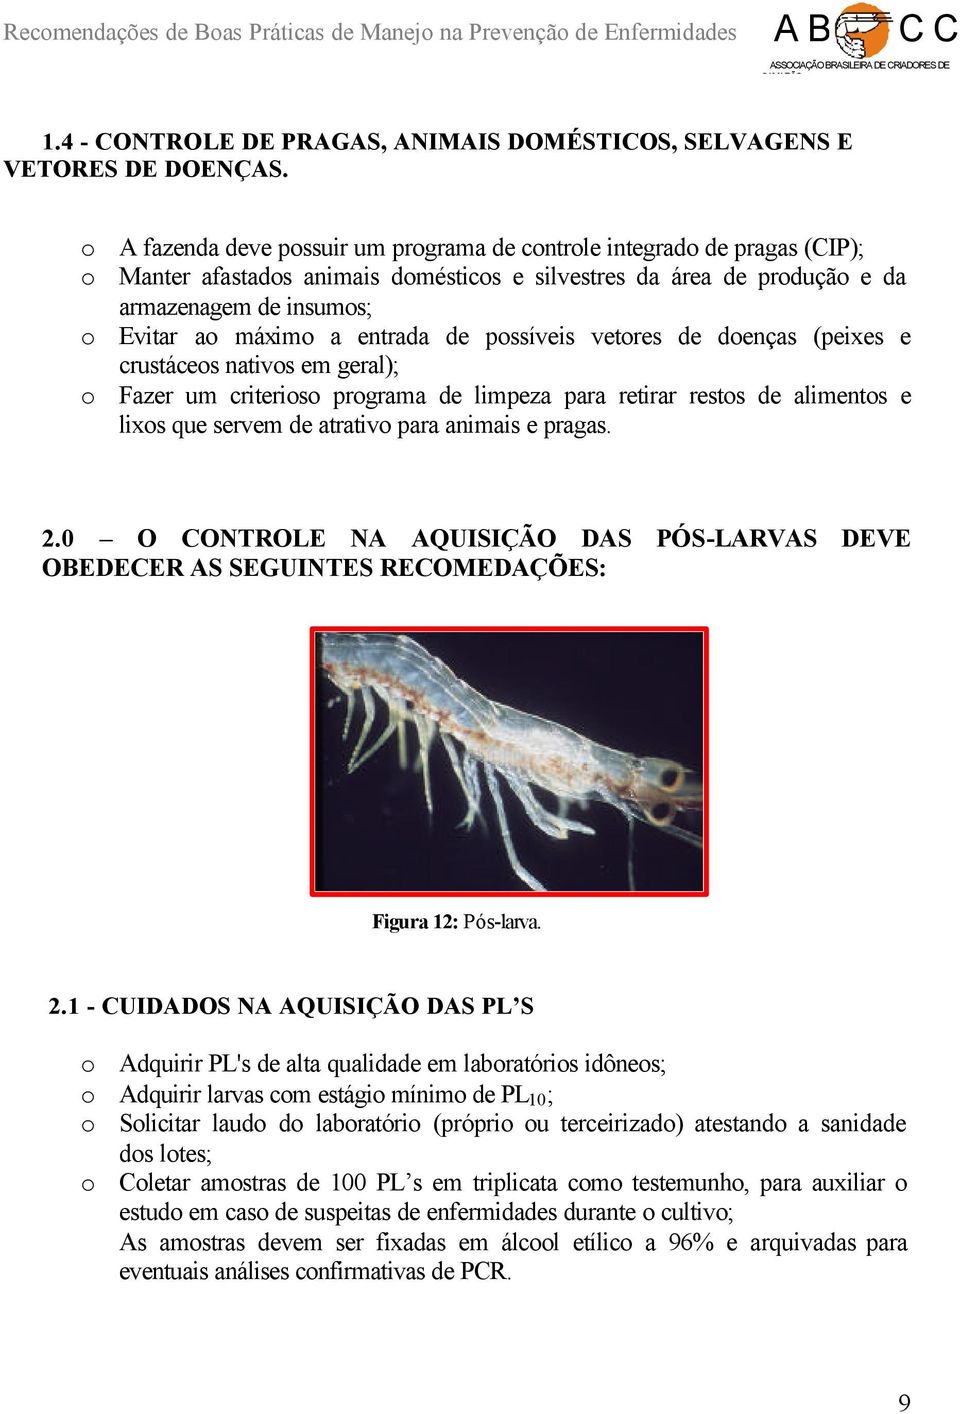 entrada de possíveis vetores de doenças (peixes e crustáceos nativos em geral); o Fazer um criterioso programa de limpeza para retirar restos de alimentos e lixos que servem de atrativo para animais